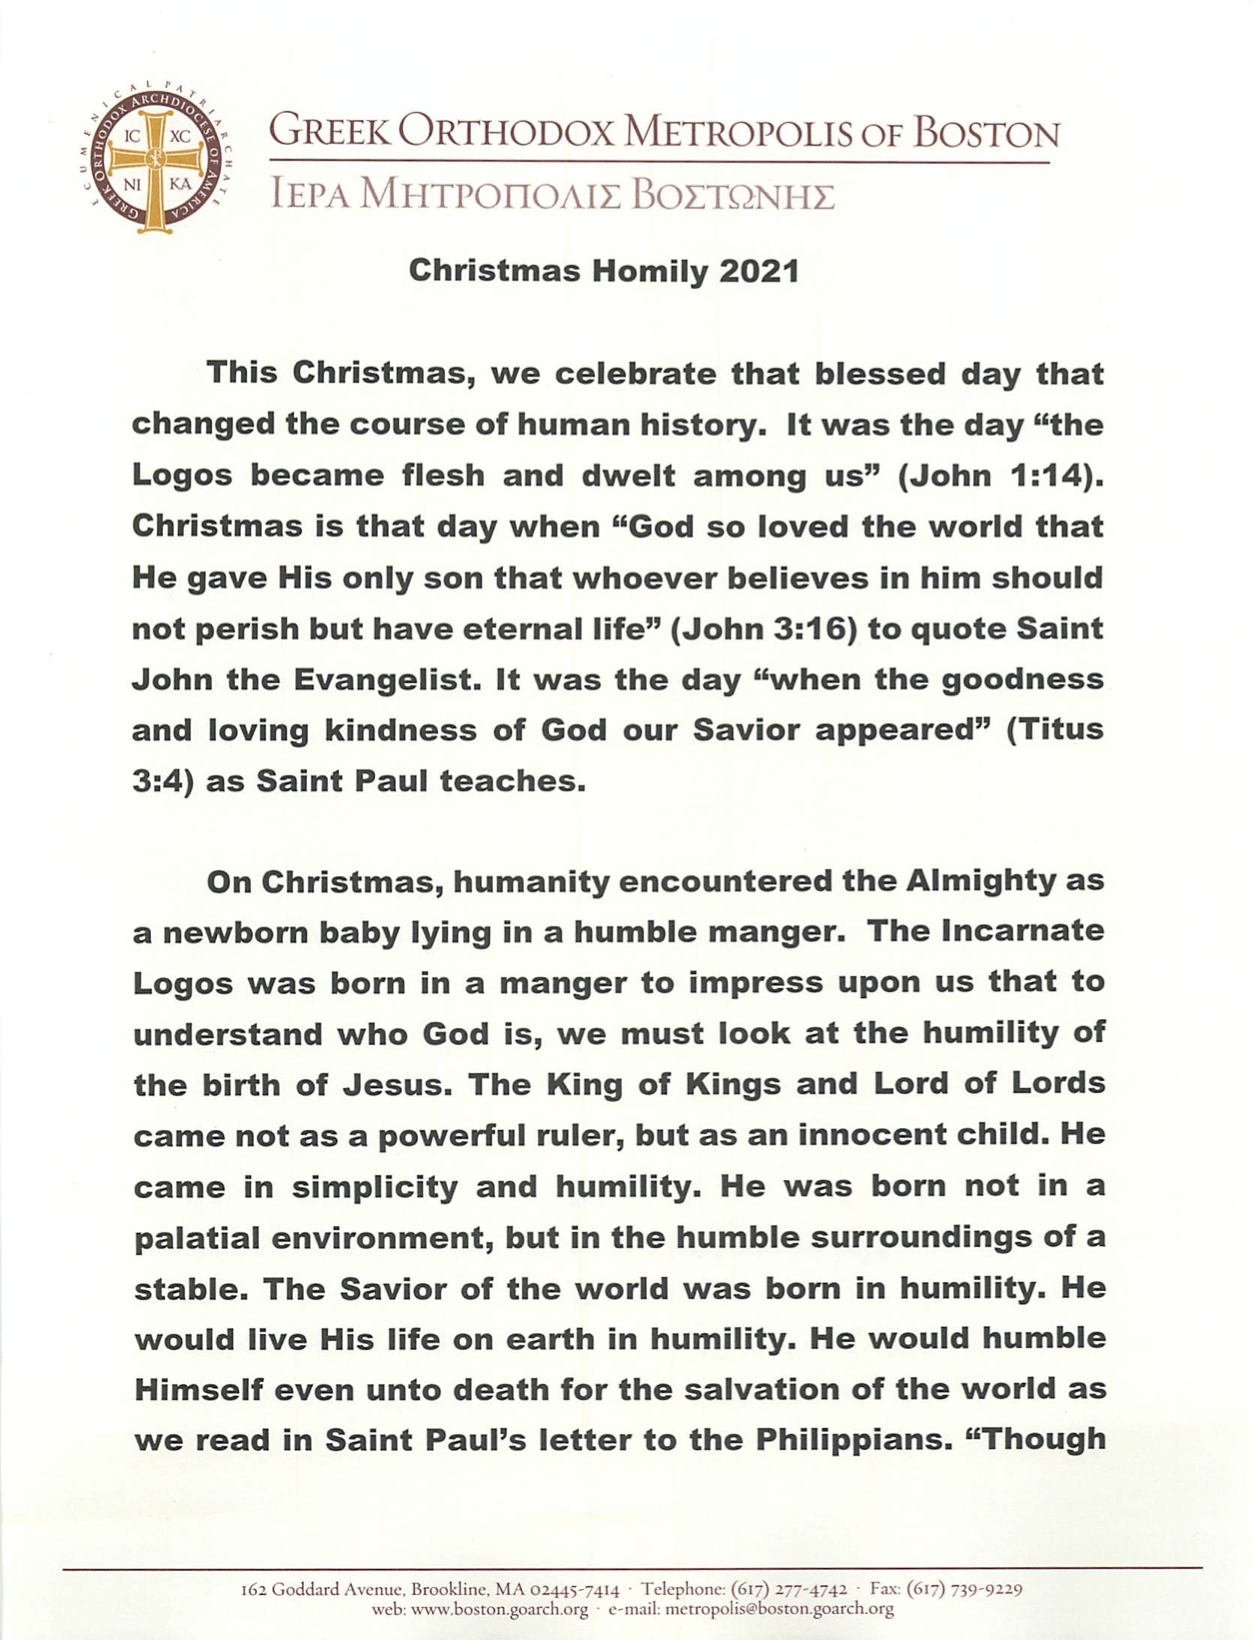 Metropolitan Methodios's Christmas Message and Christmas Homily St